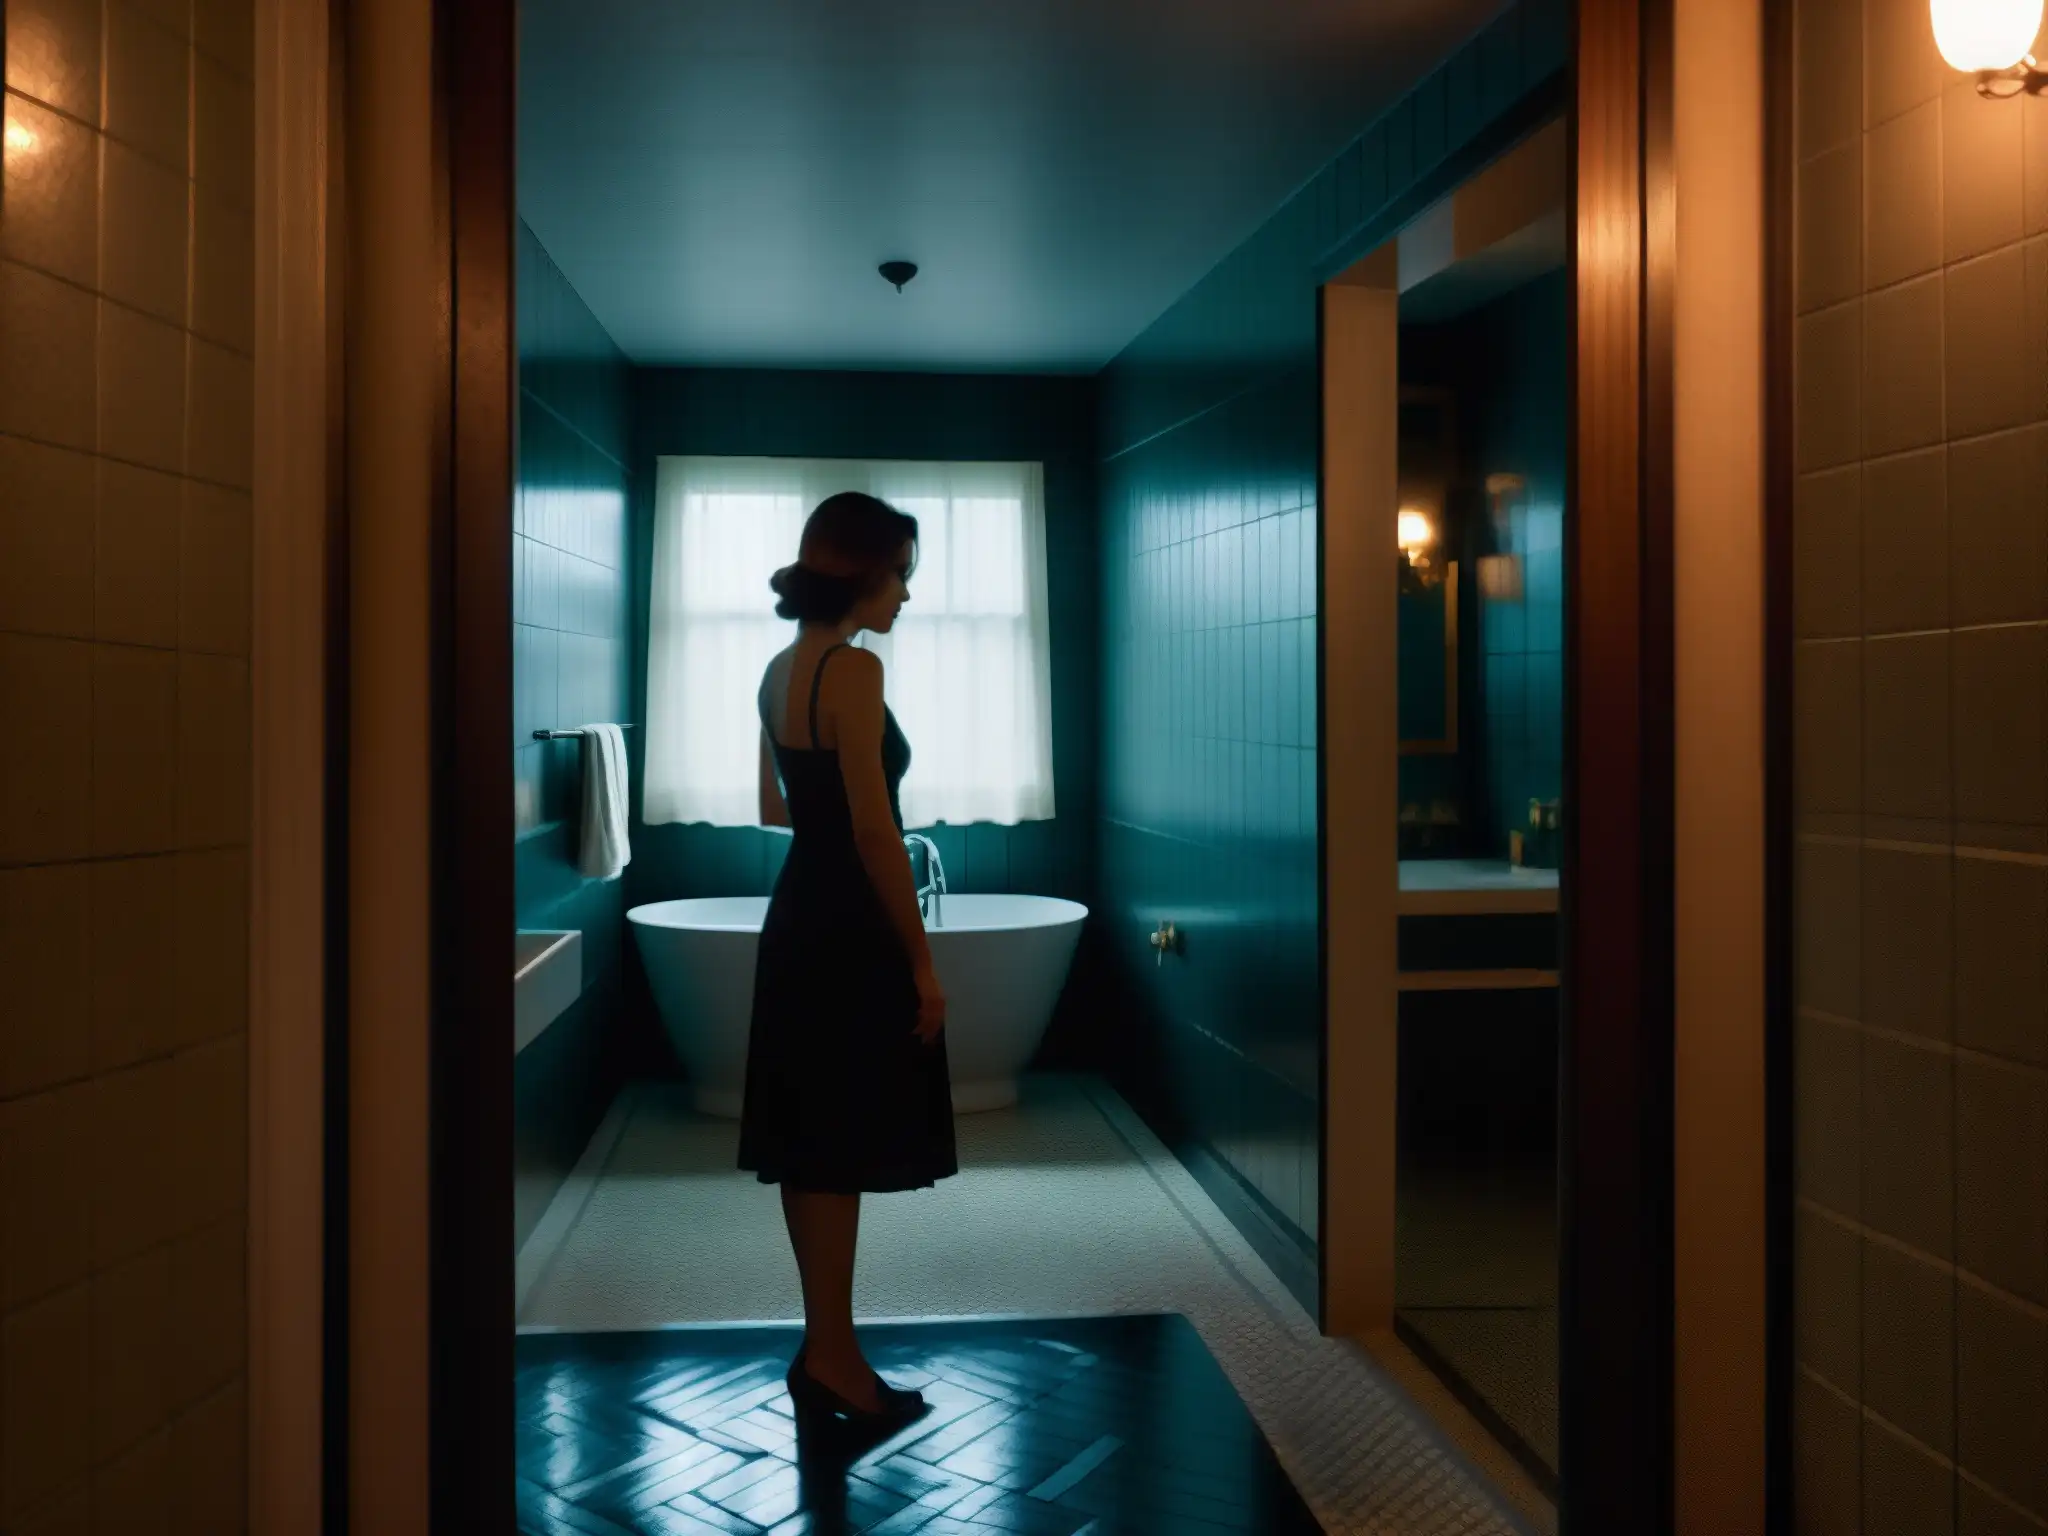 En el oscuro baño aparece un espejo vintage ligeramente agrietado con la siniestra silueta de una mujer en su reflejo